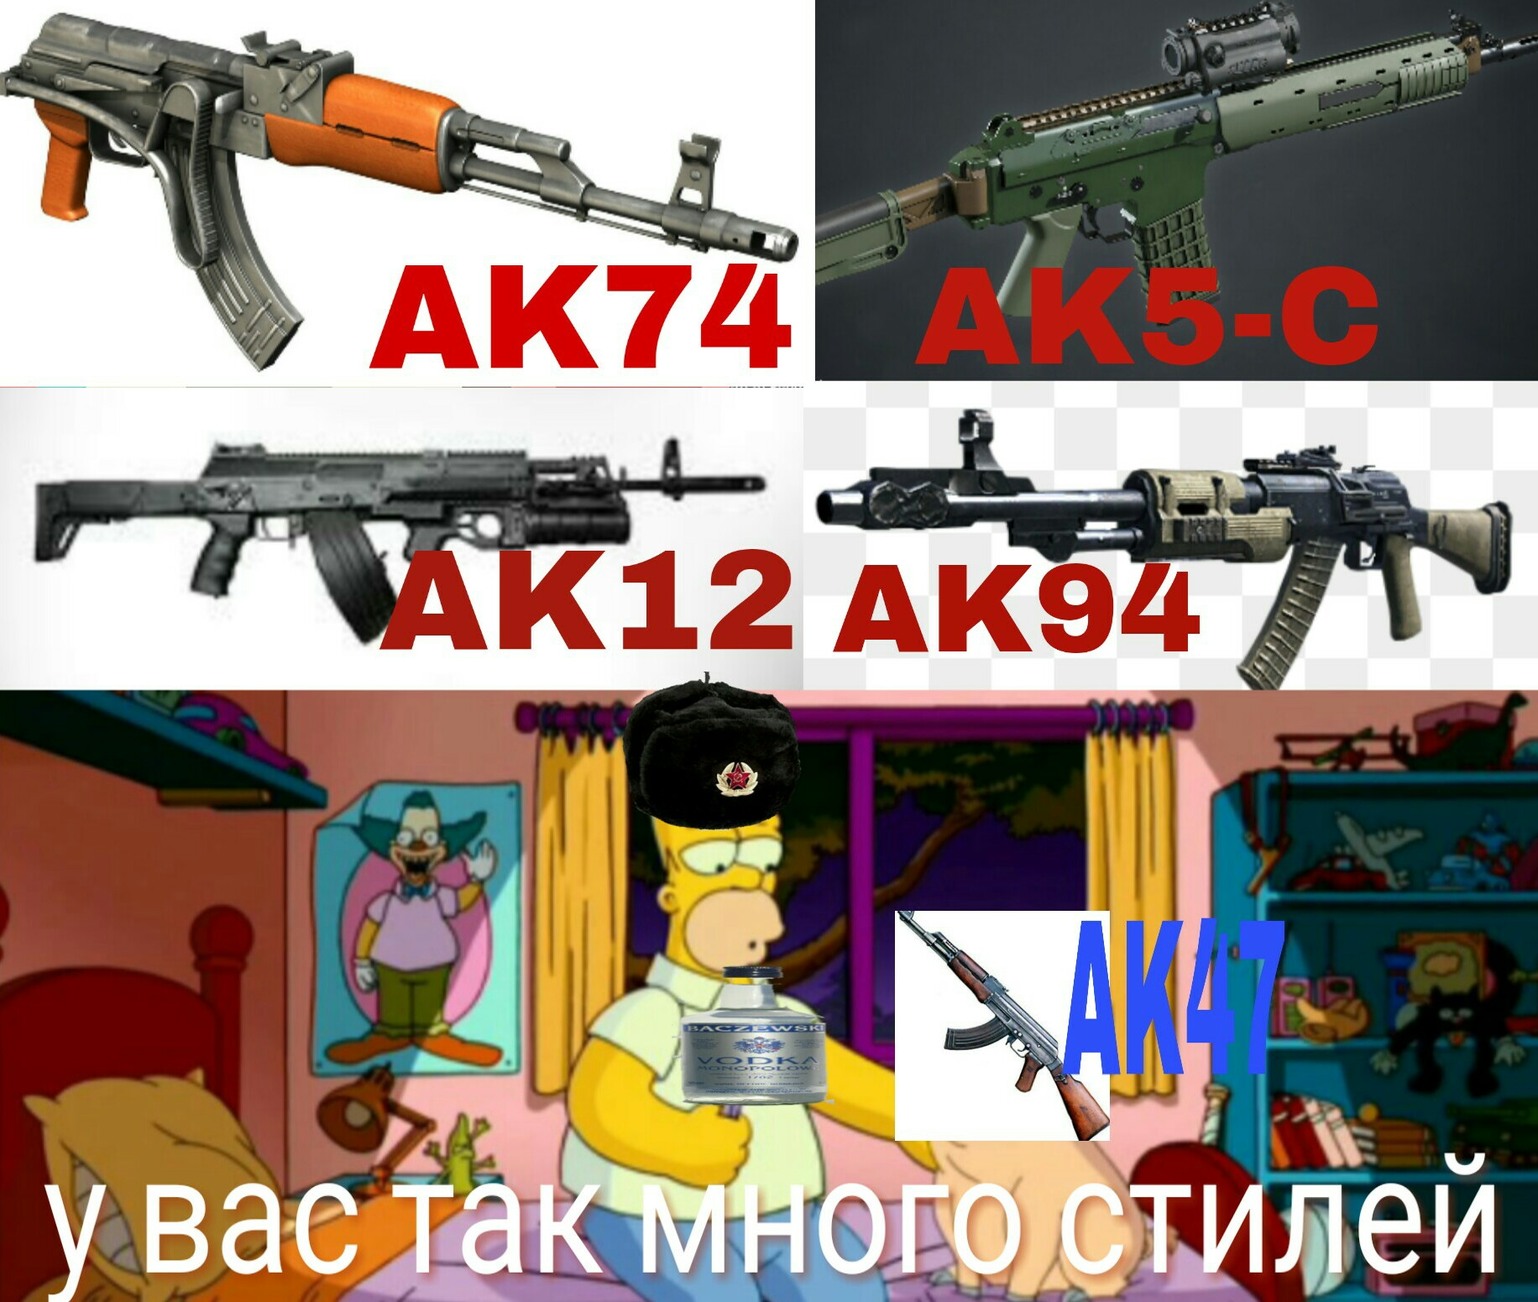 La ak47 tiene muchos estilos - meme